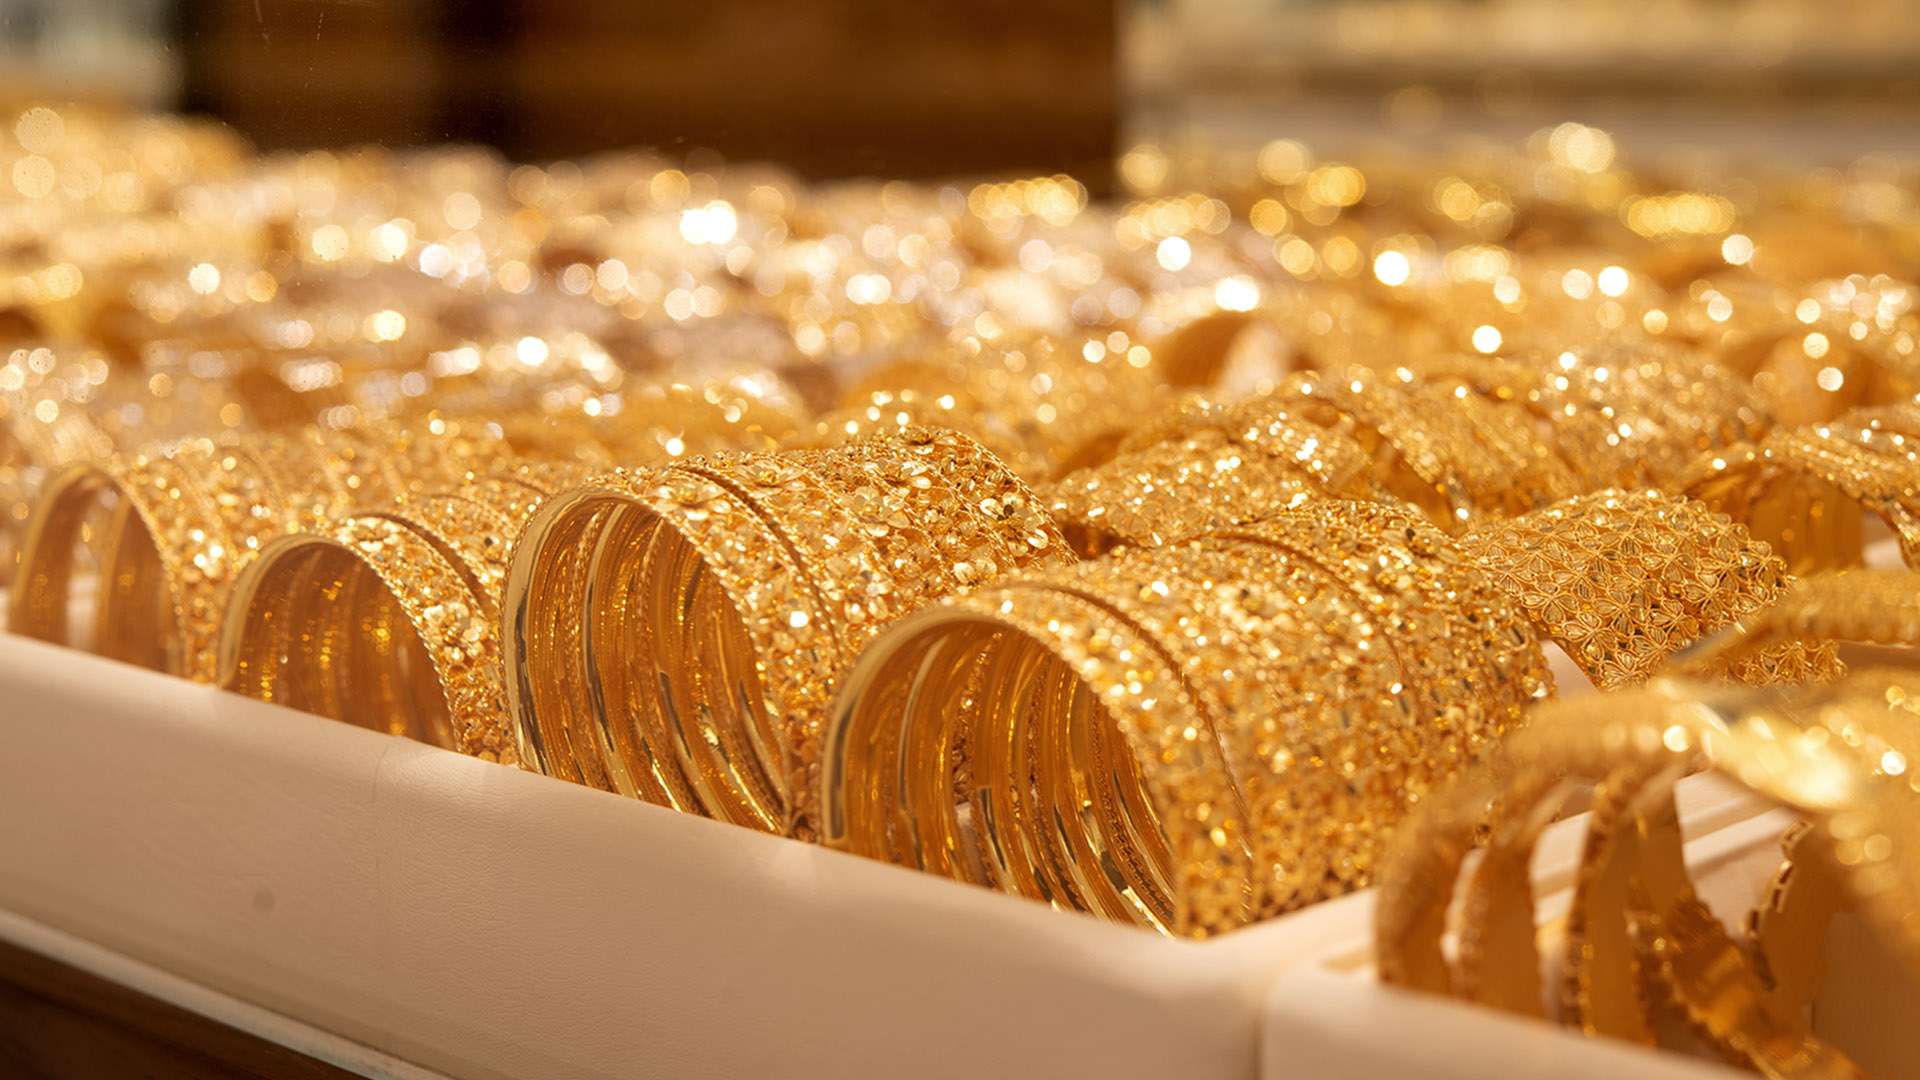 سعر الذهب في السعودية اليوم الأربعاء